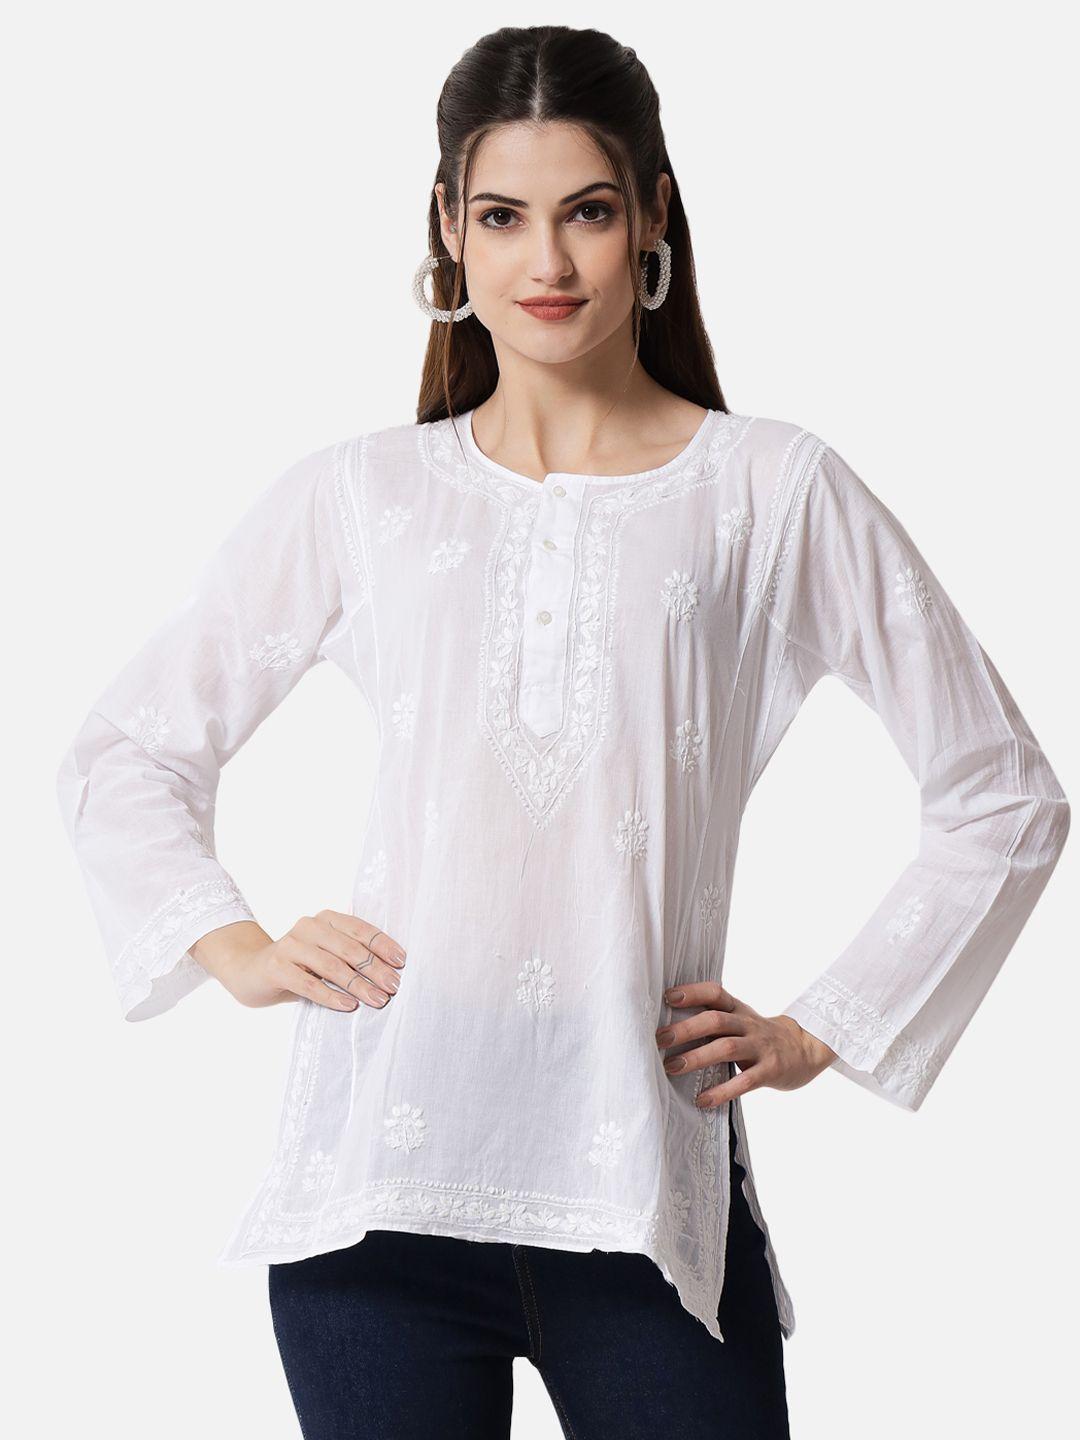 paramount chikan white ethnic motifs embroidered chikankari pure cotton sustainable kurti